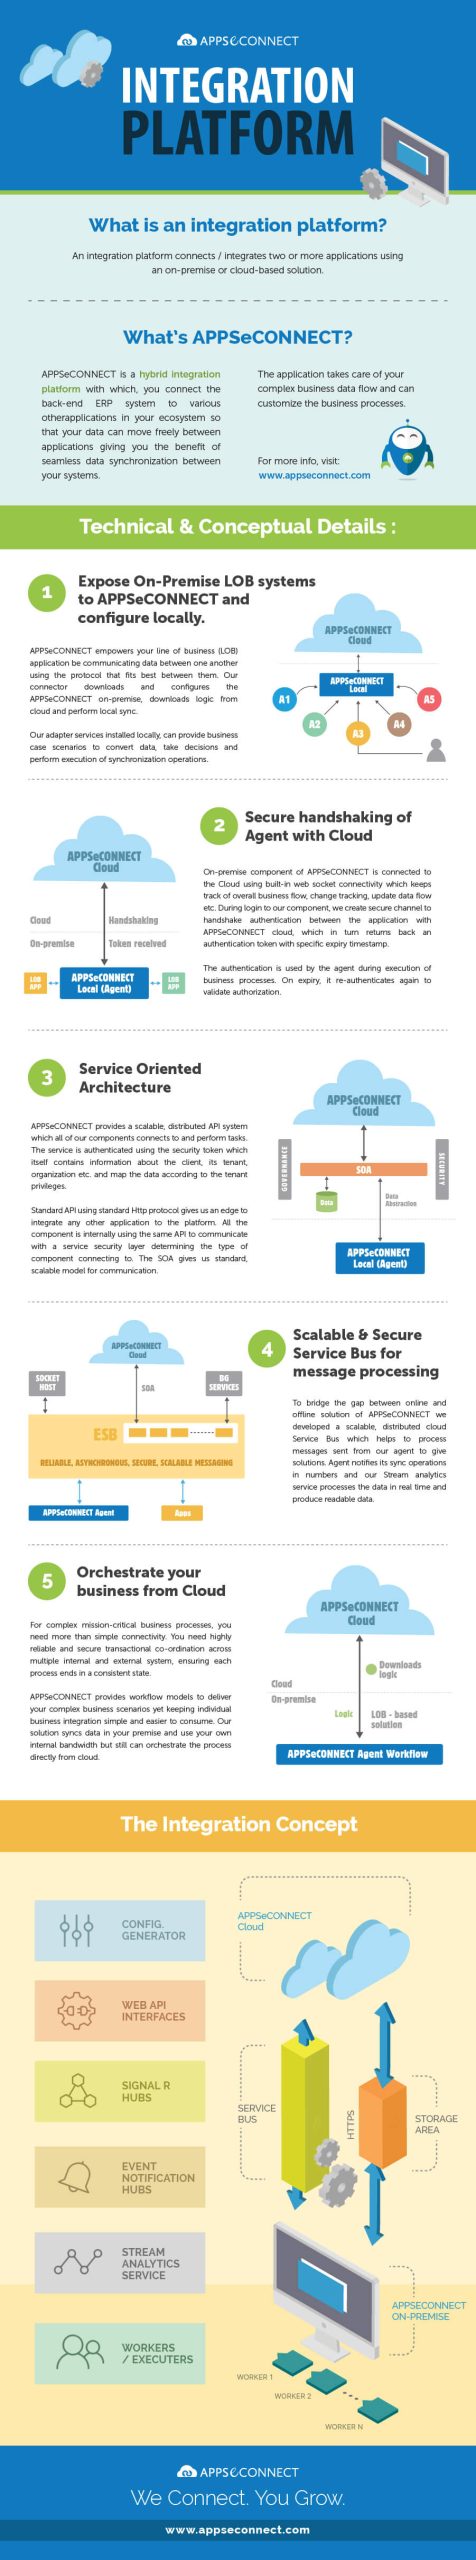 appseconnect-integration-platform-technical-conceptual-details-infographic